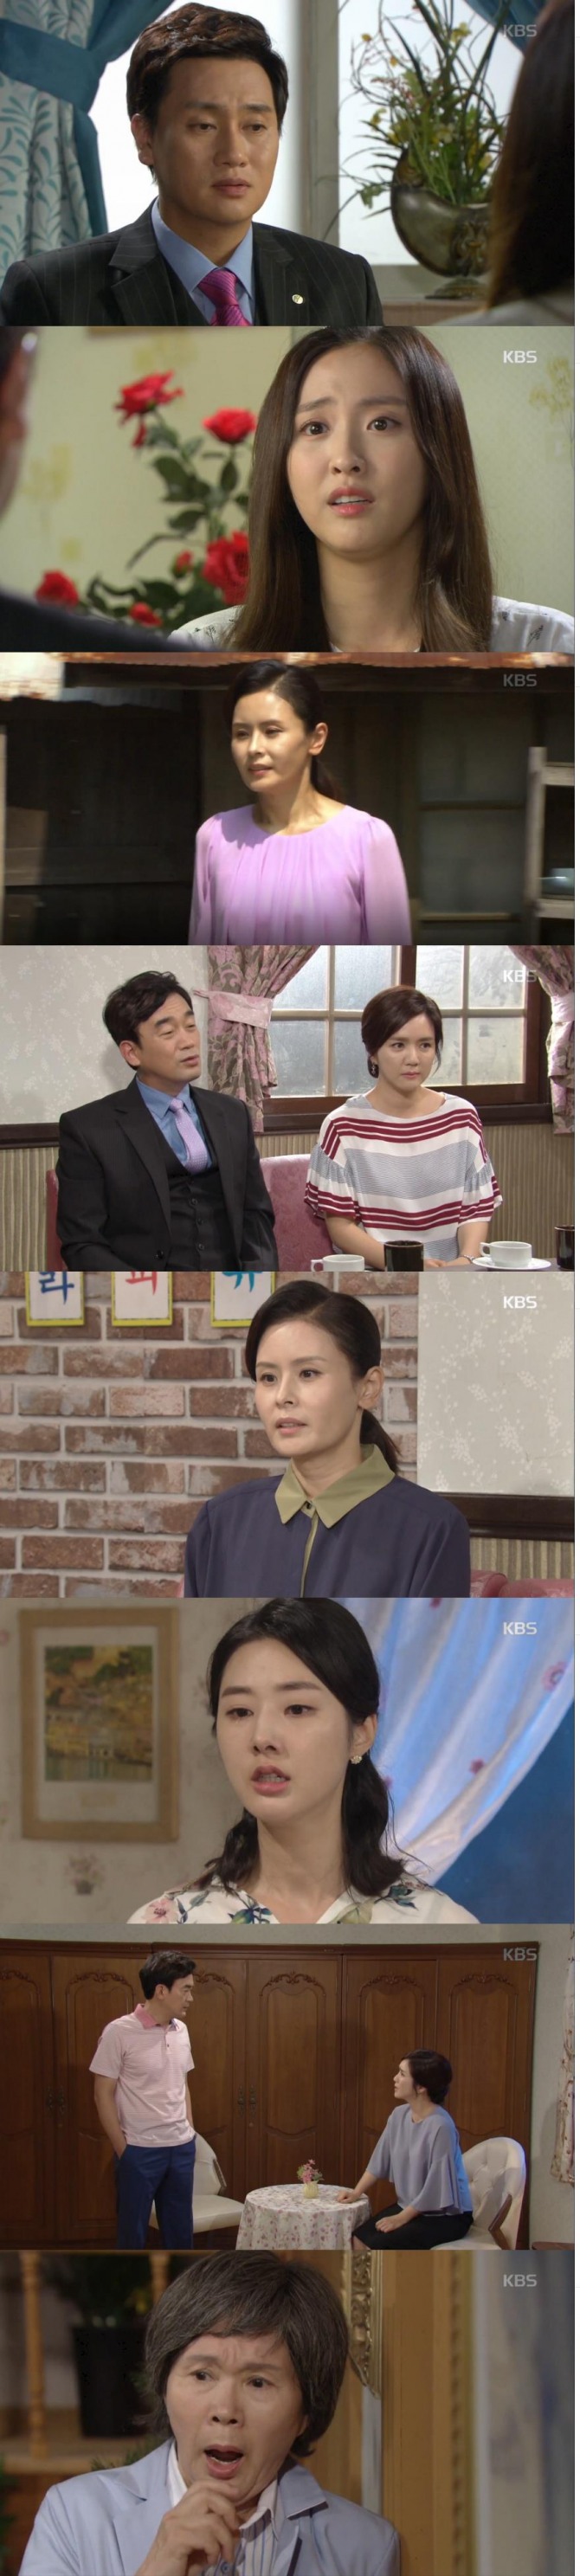 23일 아침 방송된 KBS2 TV소설 '내 마음의 꽃비'에서는 김계옥(이주실)이 민혜주(정이연)가 바로 이수창(정희태)의 딸이라는 충격적인 사실을 알게 되는 장면이 그려졌다./사진=KBS2 방송 캡처